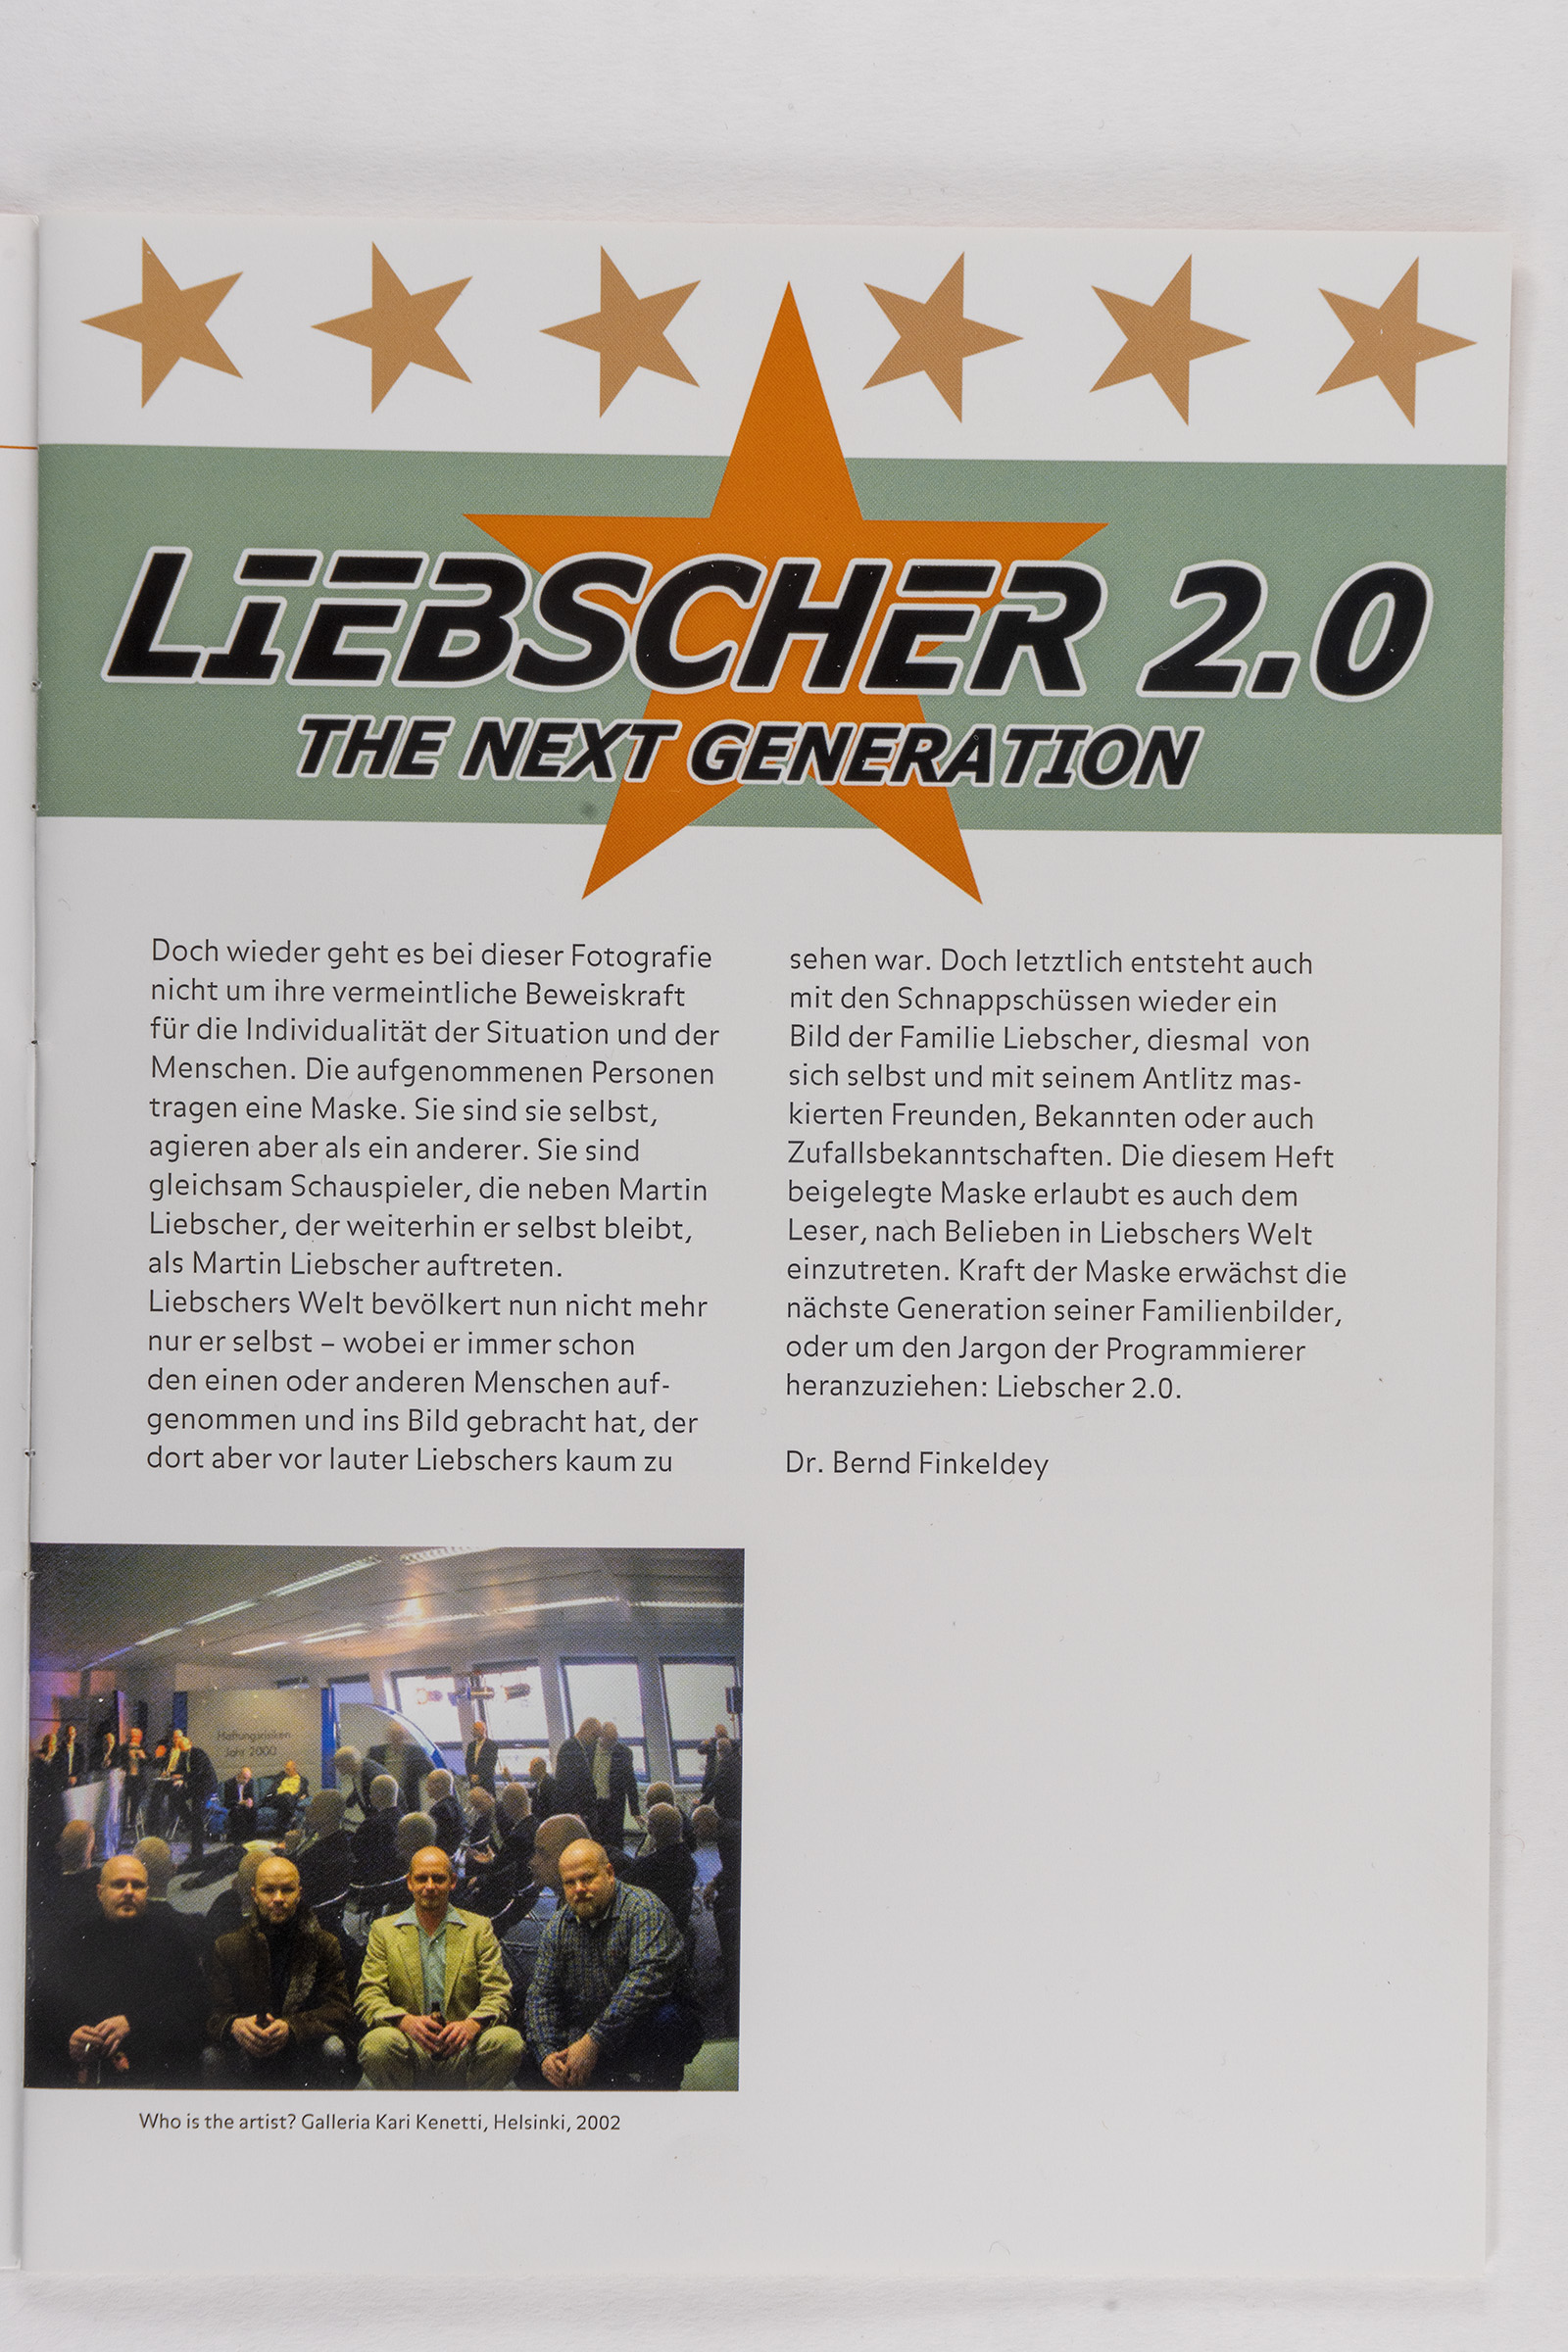 Liebscher 2.0 The Next Generation